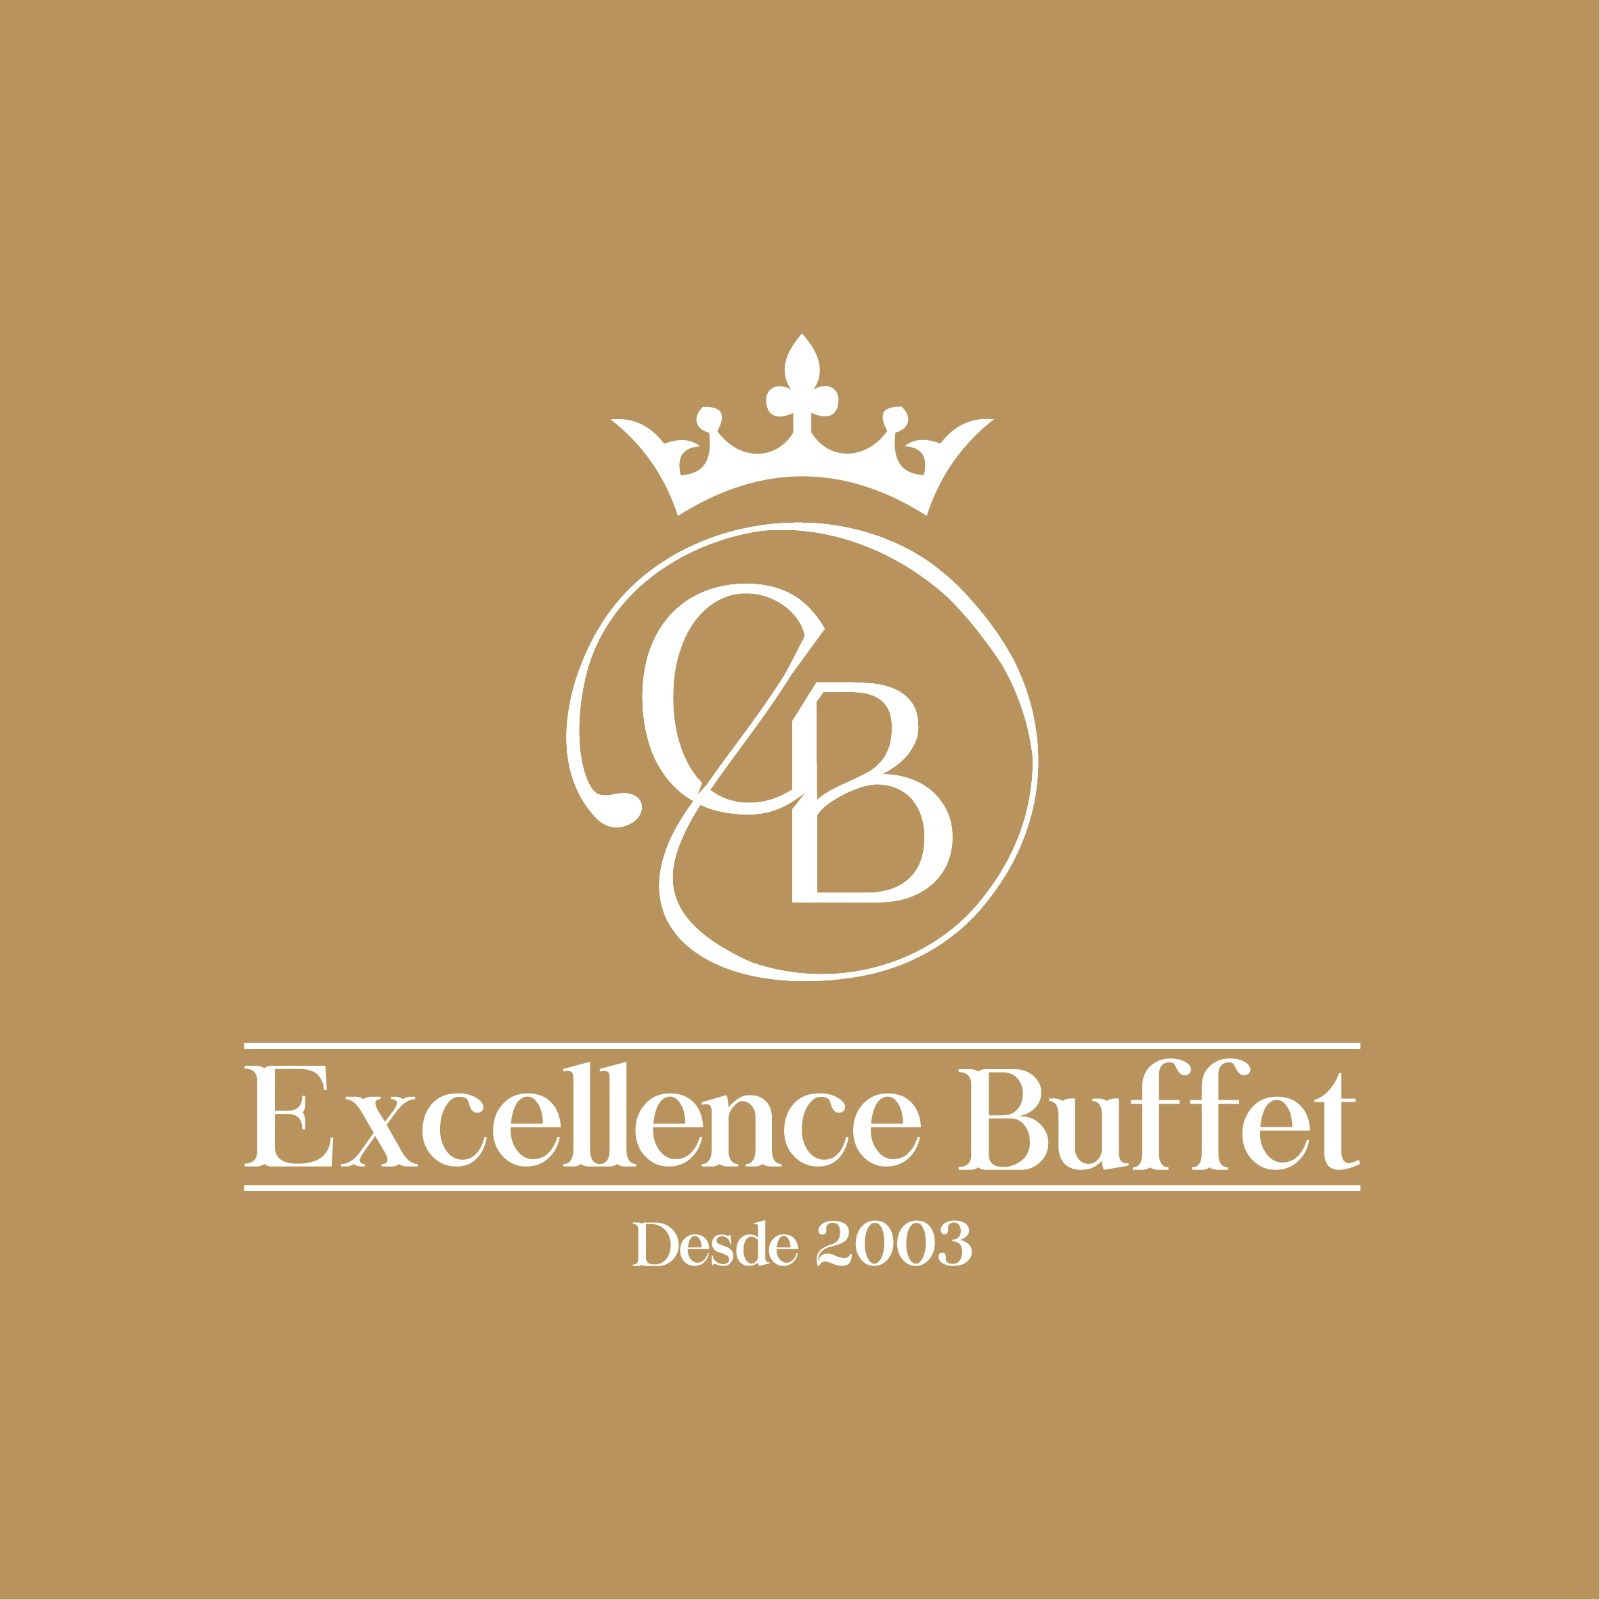 (c) Excellencebuffet.com.br